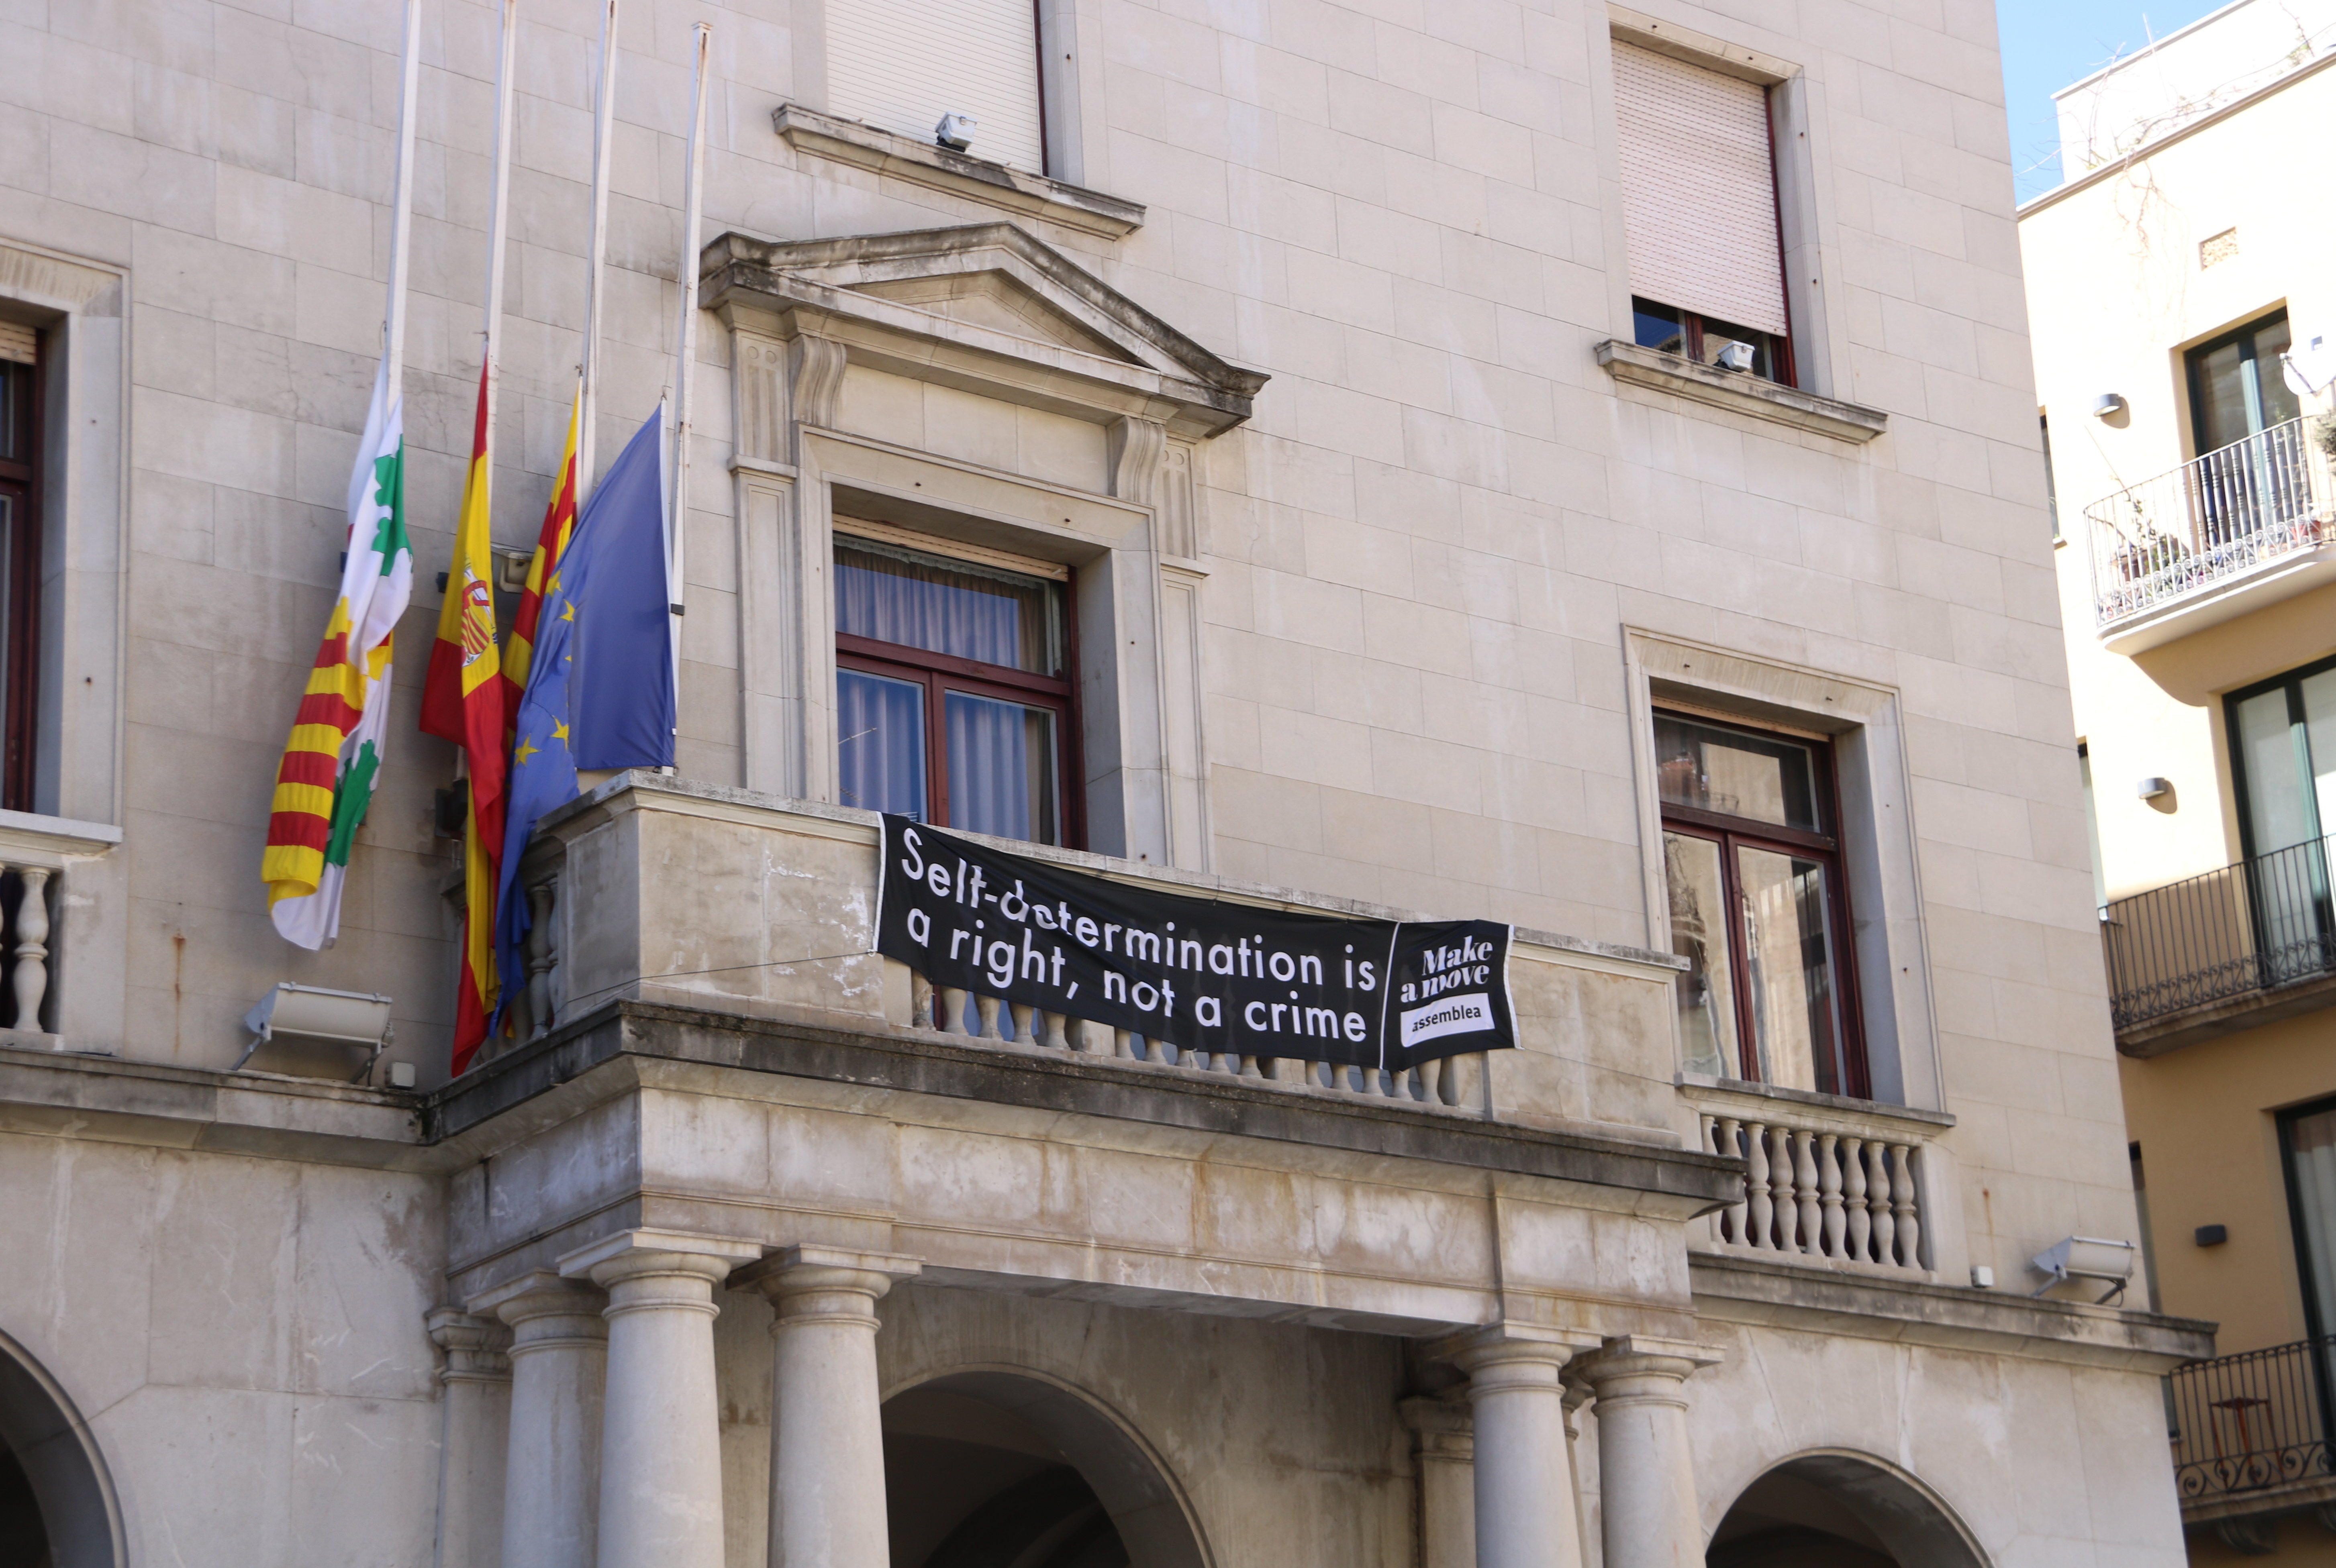 Figueres despenja la pancarta de l'ajuntament i la posarà a l’edifici privat del costat